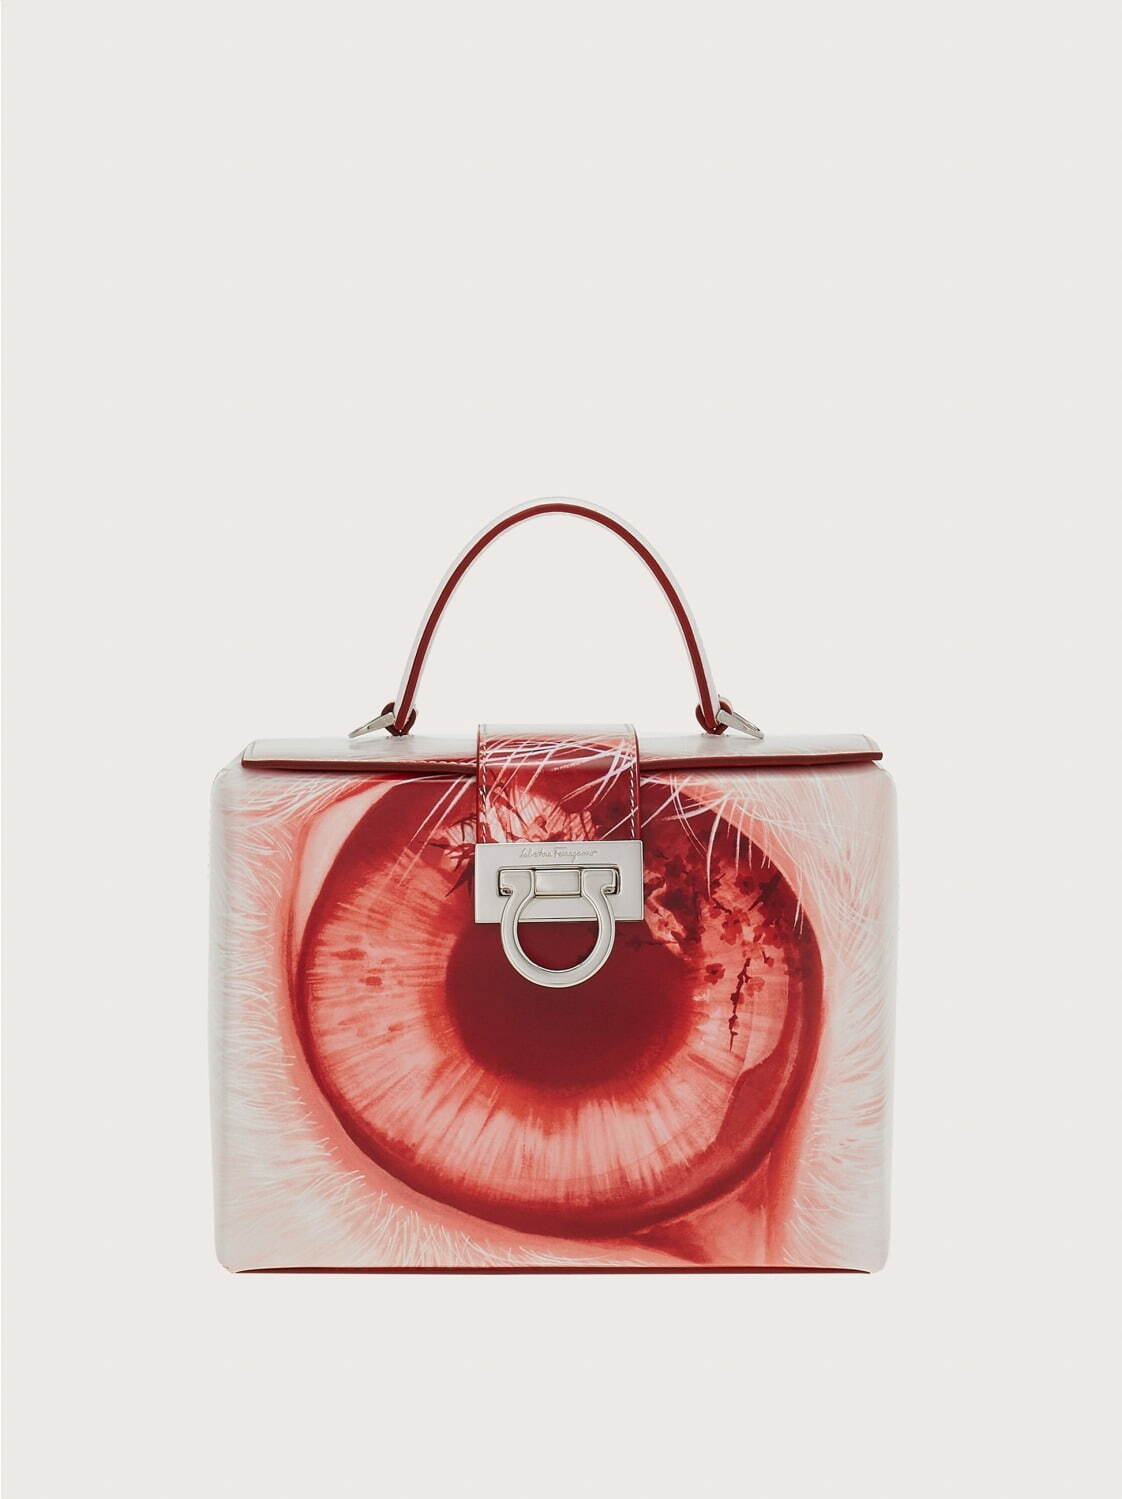 〈フェラガモ〉“うさぎの目”イラストを配したレザーハンドバッグ